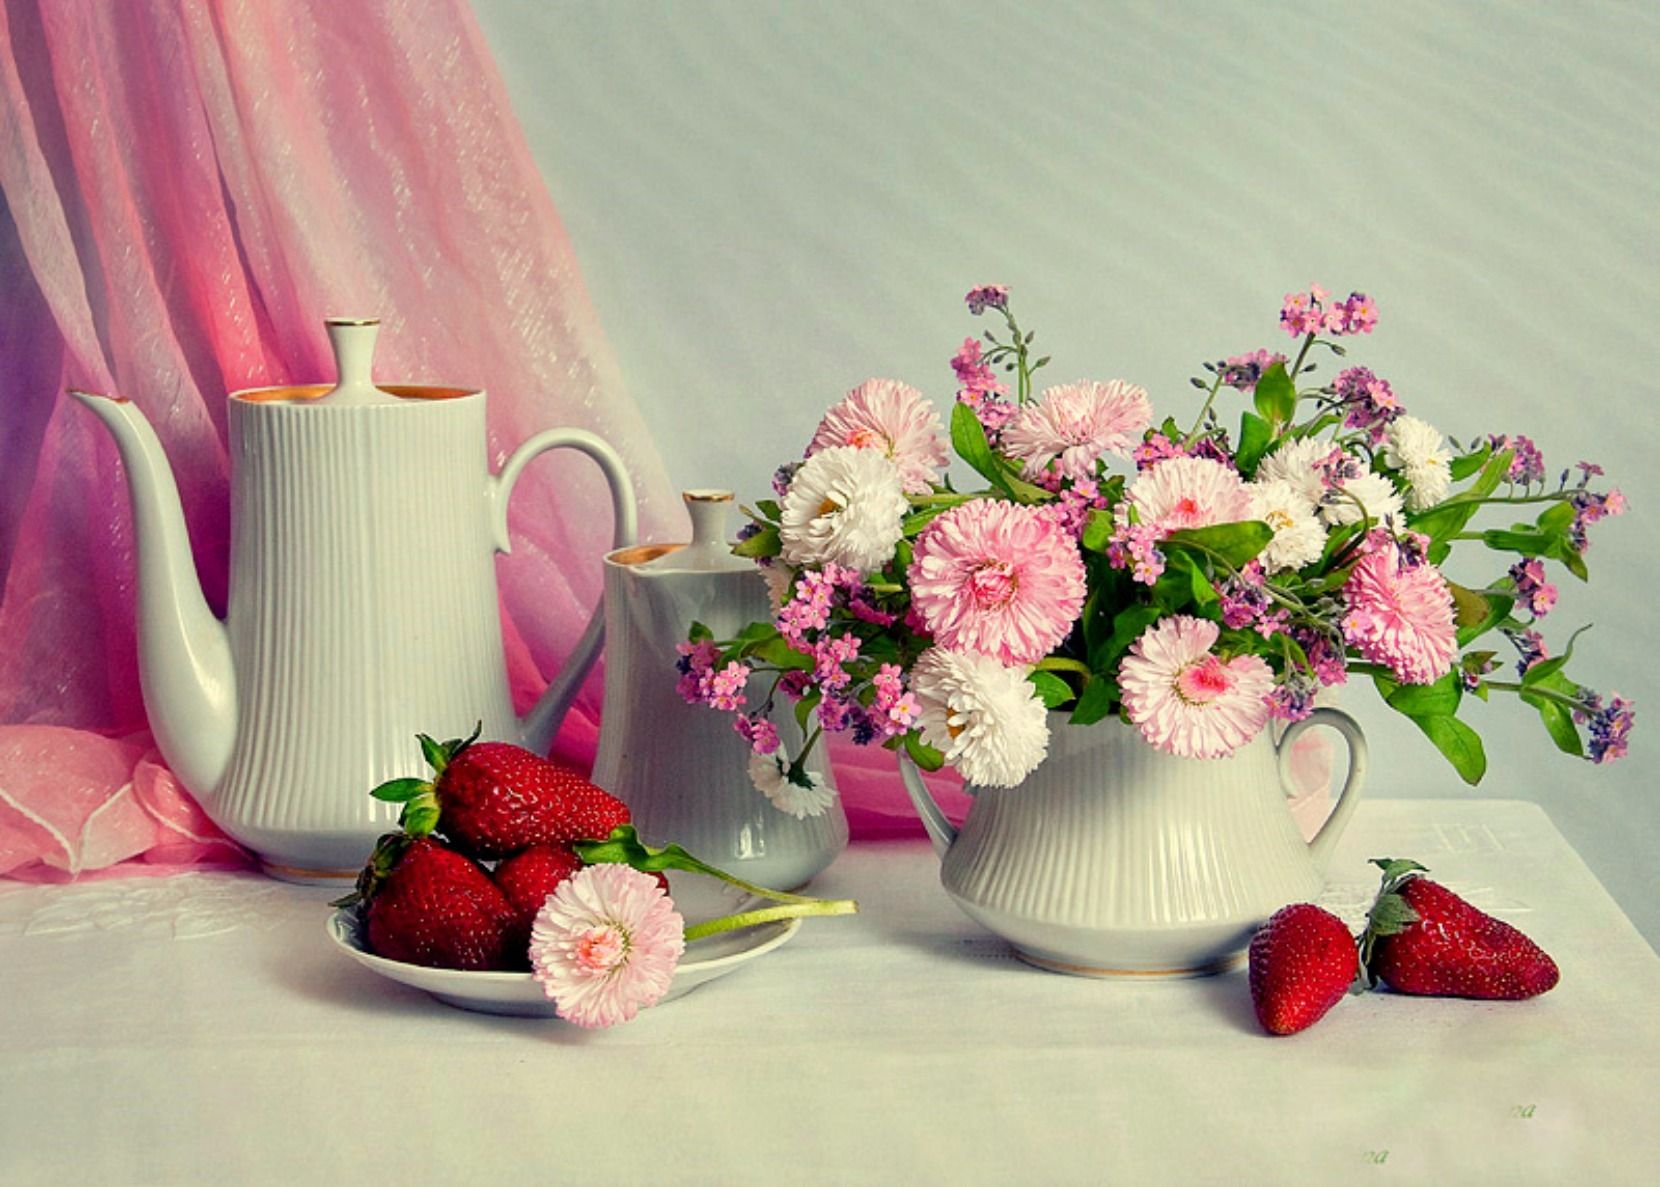 Хорошего нежного дня настроения. Прекрасного утра и настроения. Прекрасный день. Доброе утро прекрасного дня. Открытки с добрым утром с цветами.